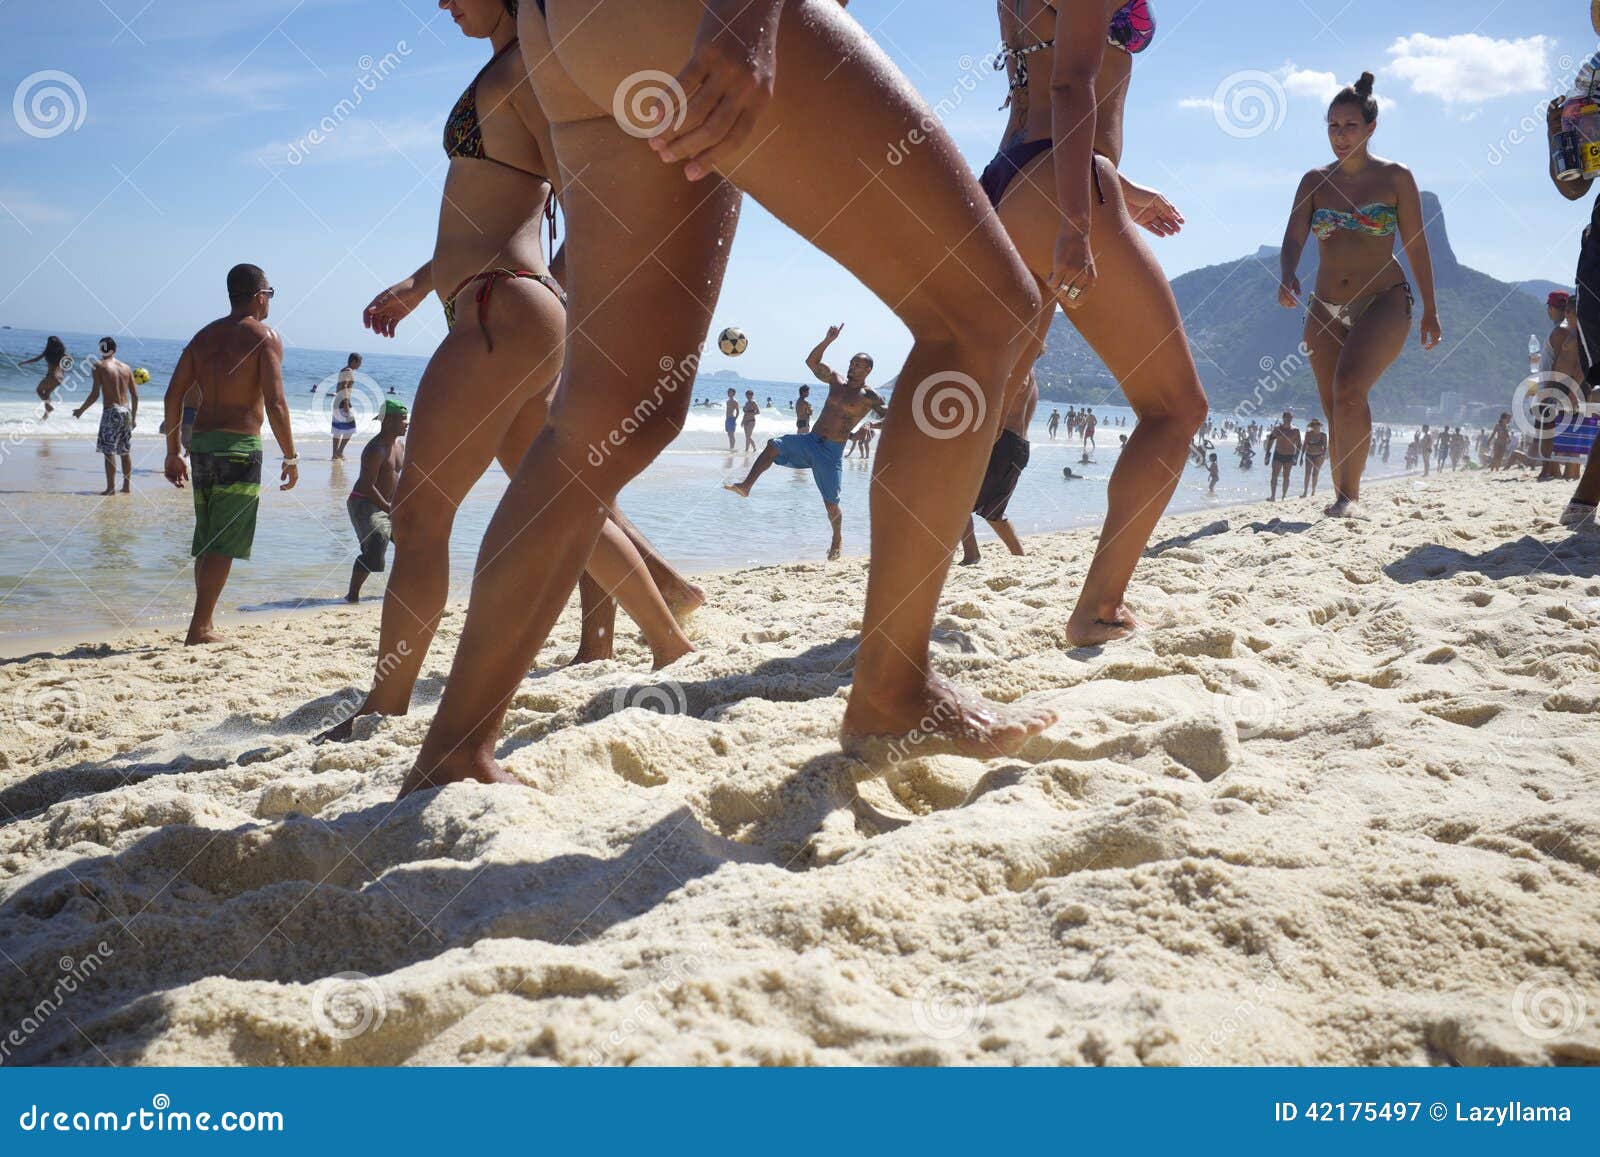 Brazilian brazil beach girl